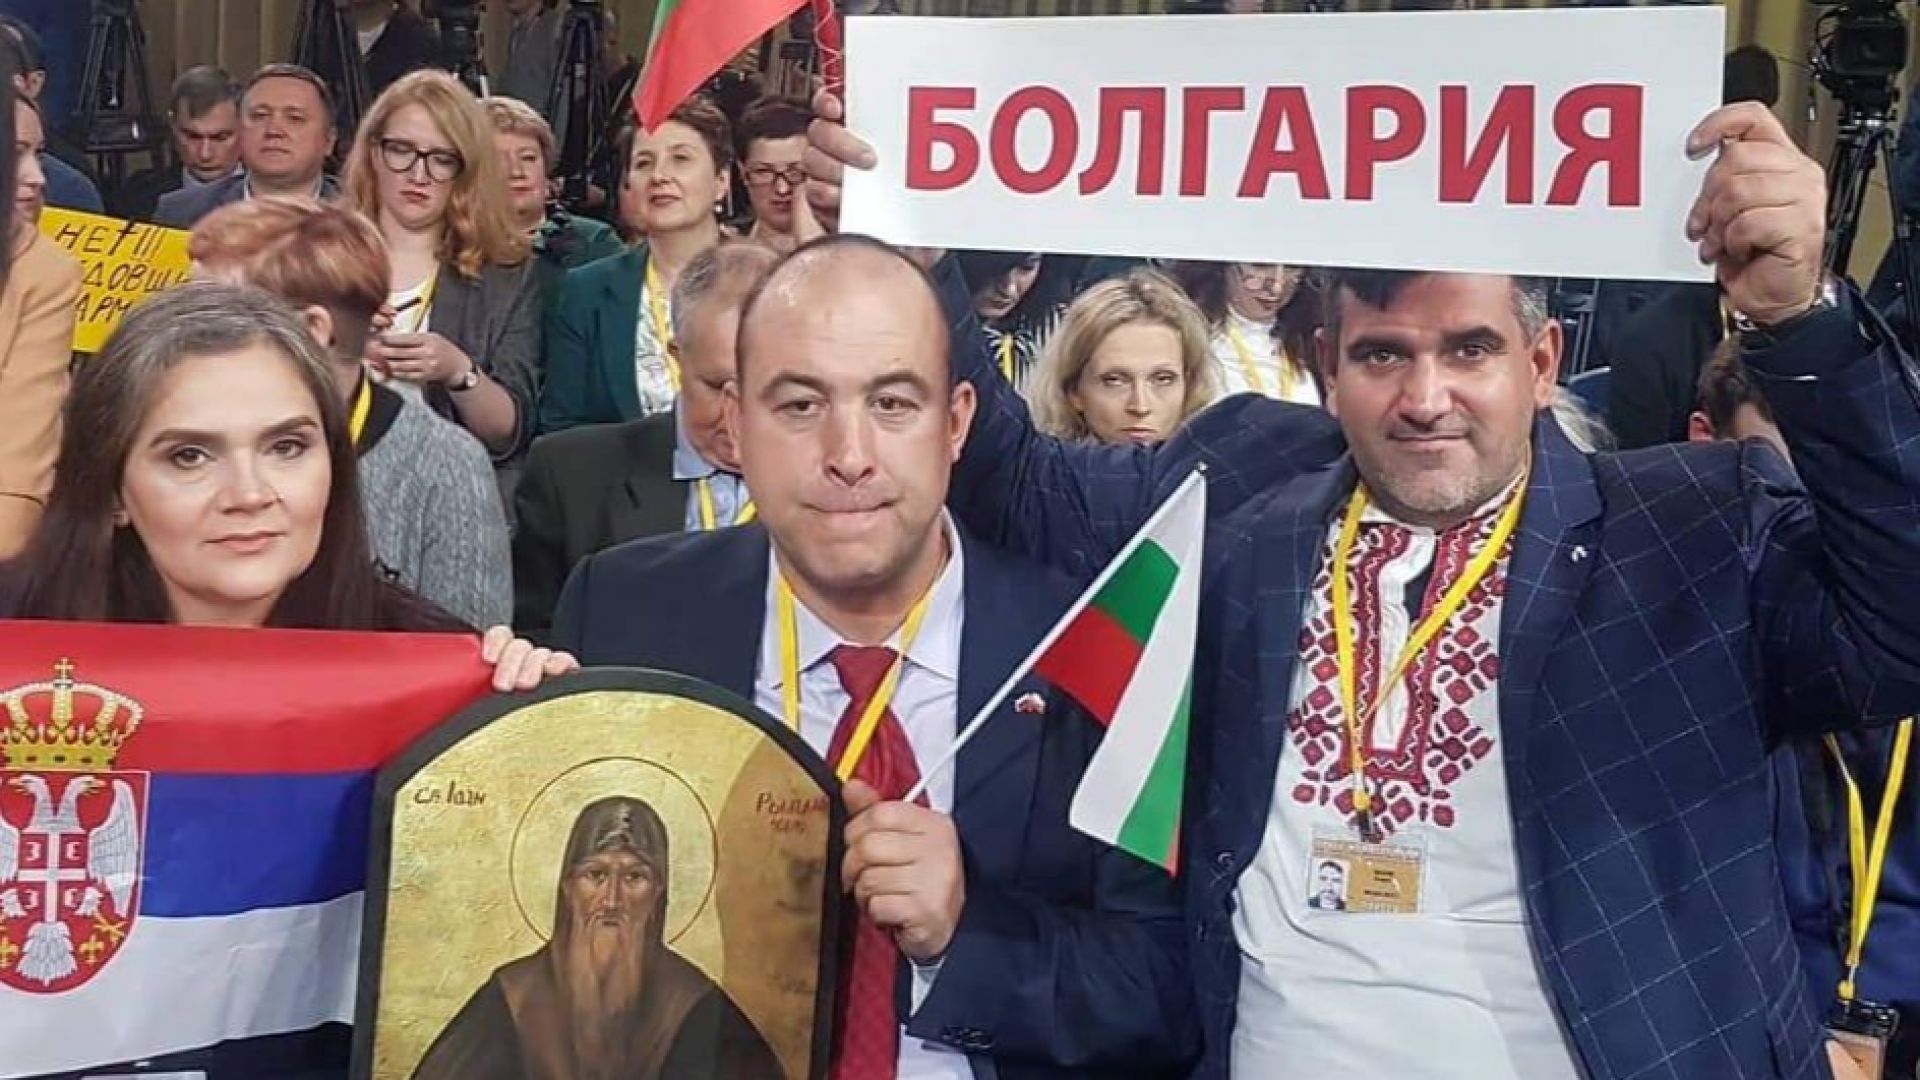 Българският журналист Атанас Стефанов от агенция Булпрес прекъсна годишната пресконференция